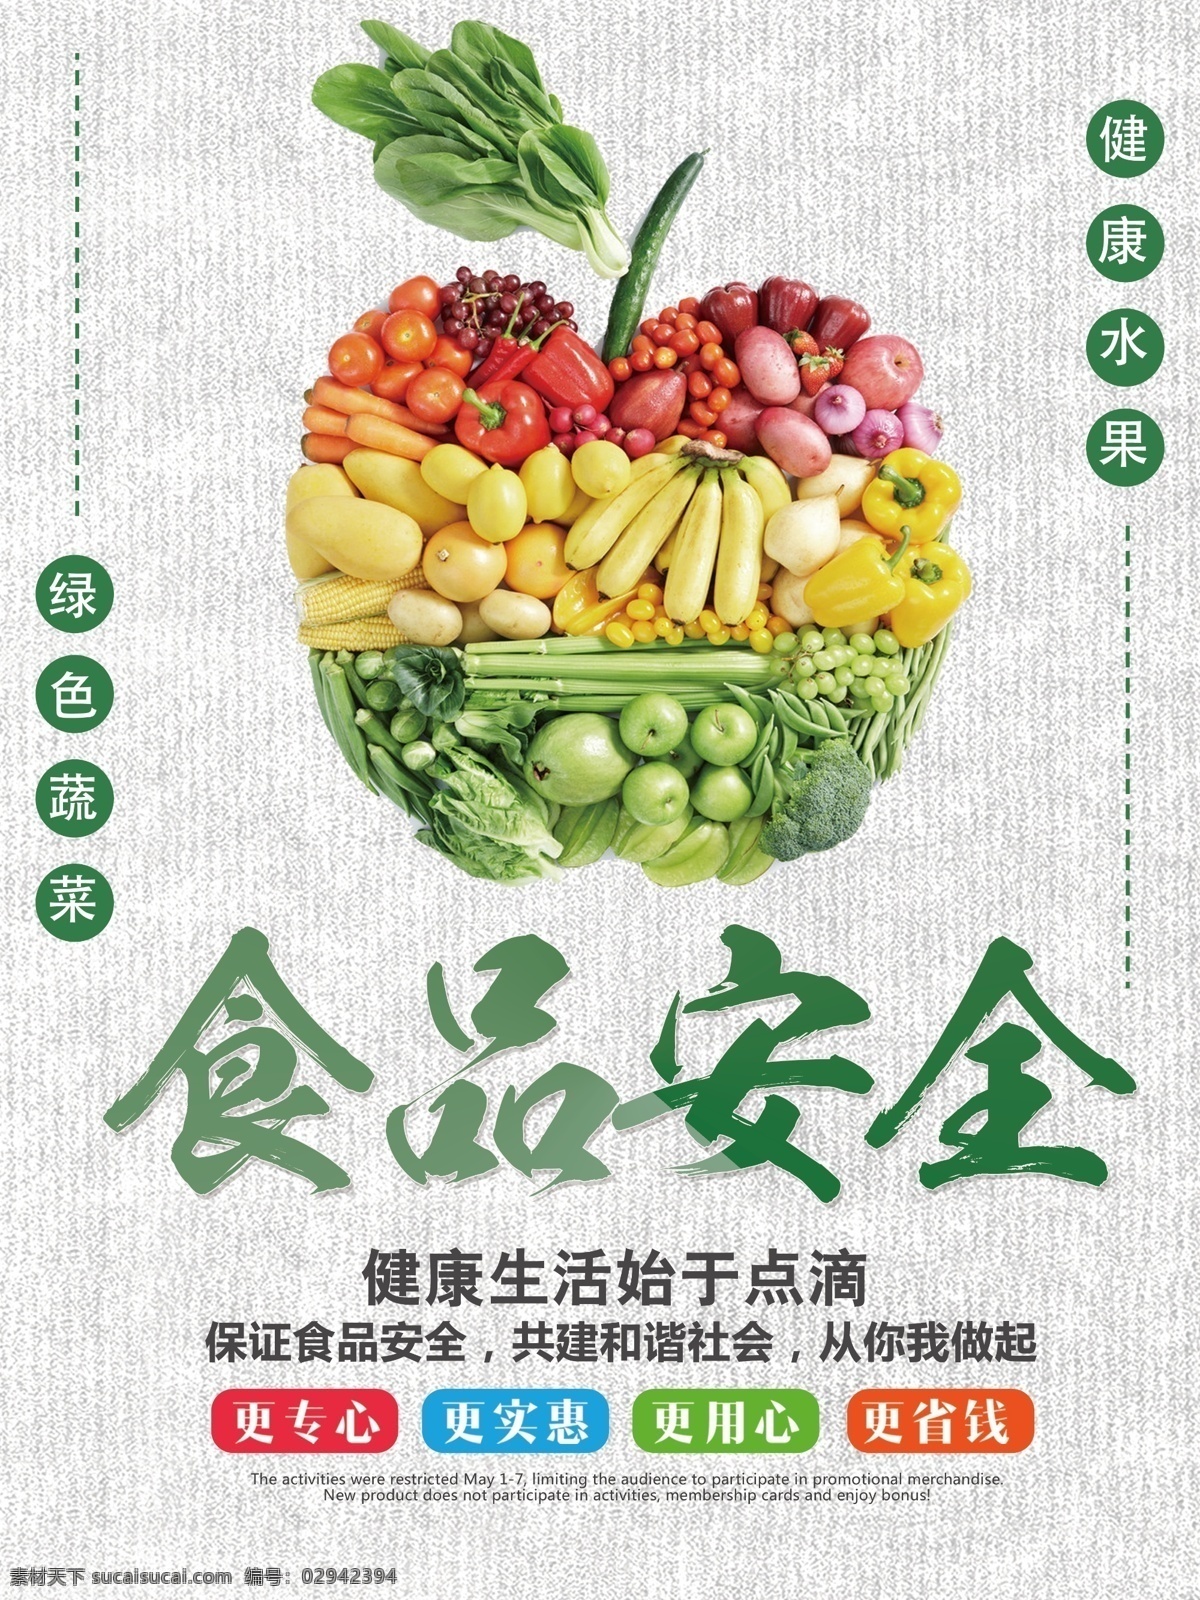 质量月 浅绿色 简约 水果 蔬菜 食品安全 公益 党政 海报 食品 安全 浅绿色简约 水果蔬菜 公益海报 党政海报